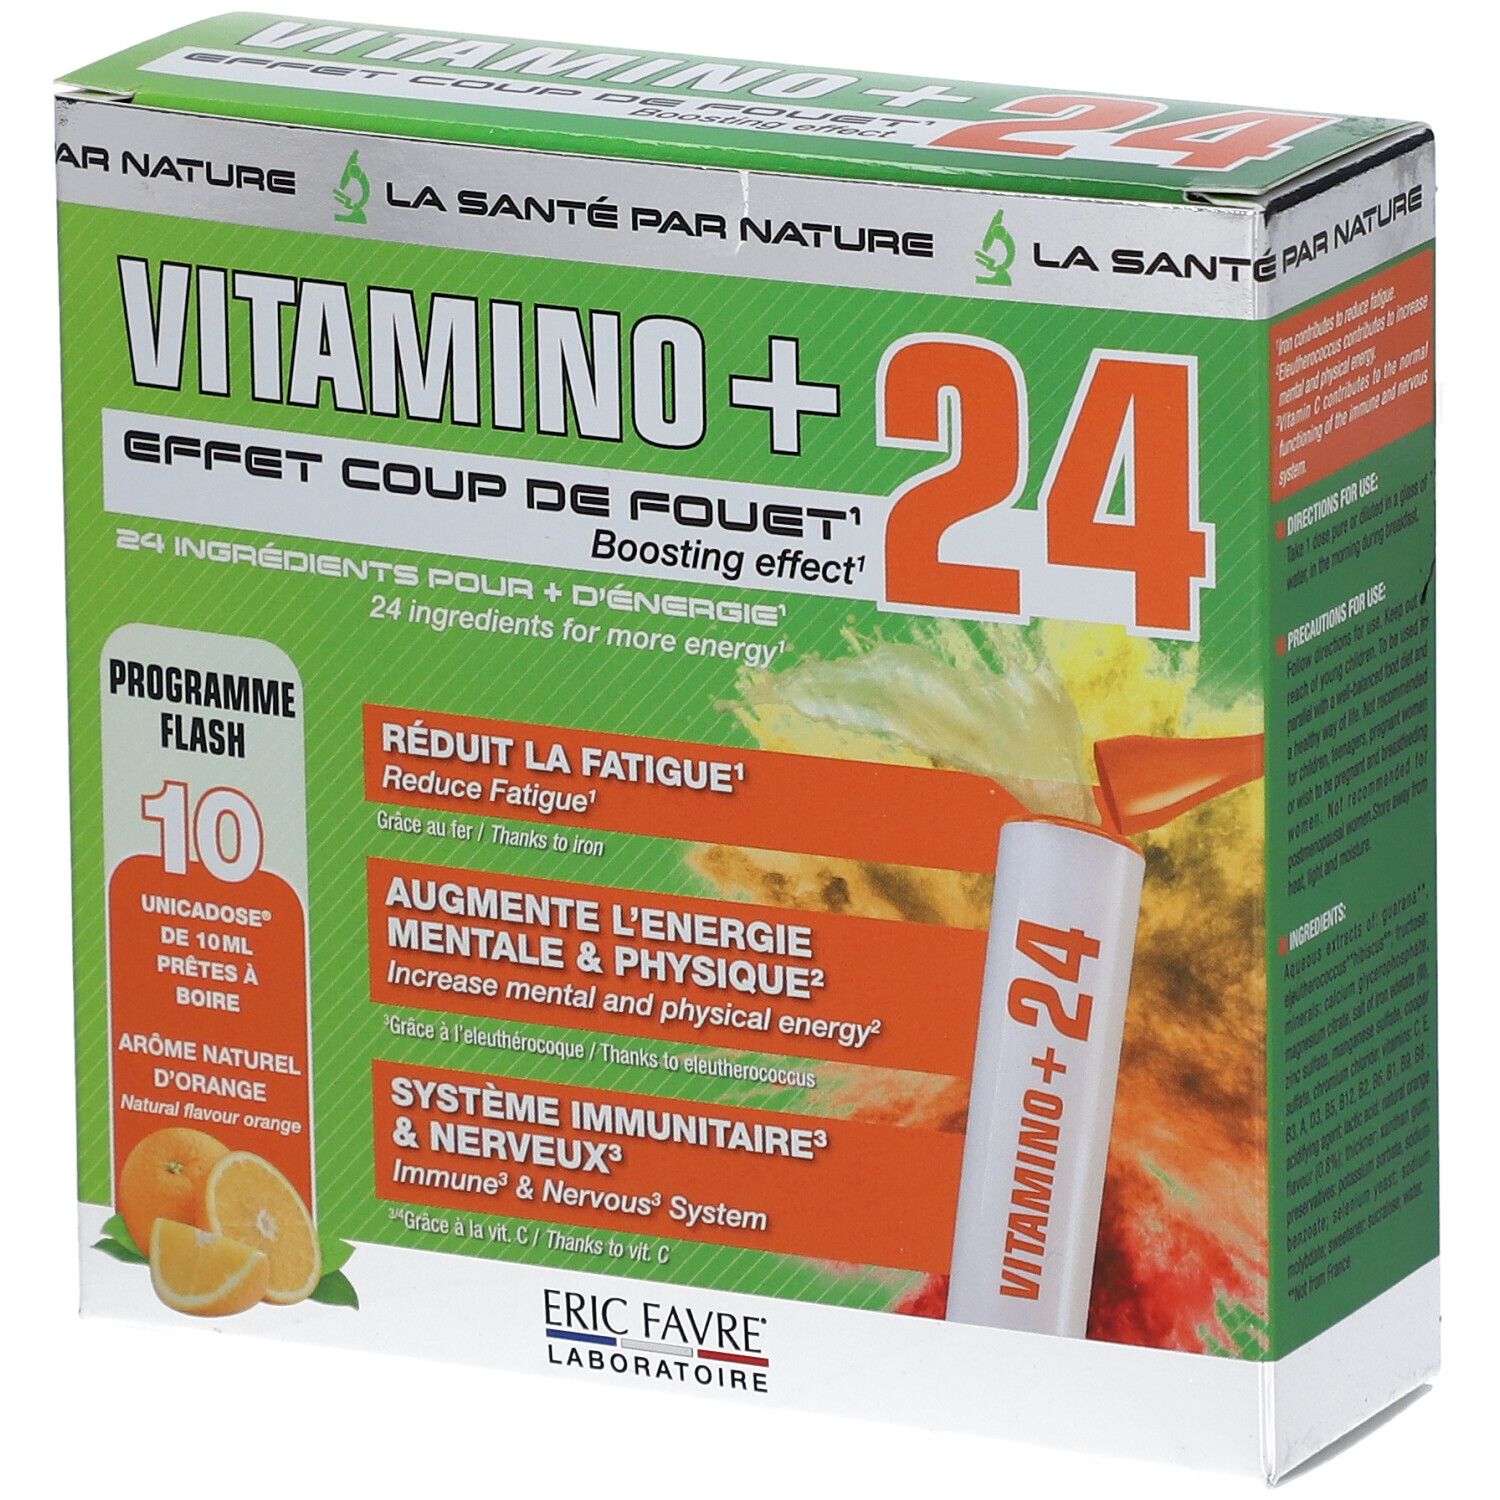 Eric Favre Vitamino + Unicadoses - Immunité, fatigue, multivitamines et minéraux